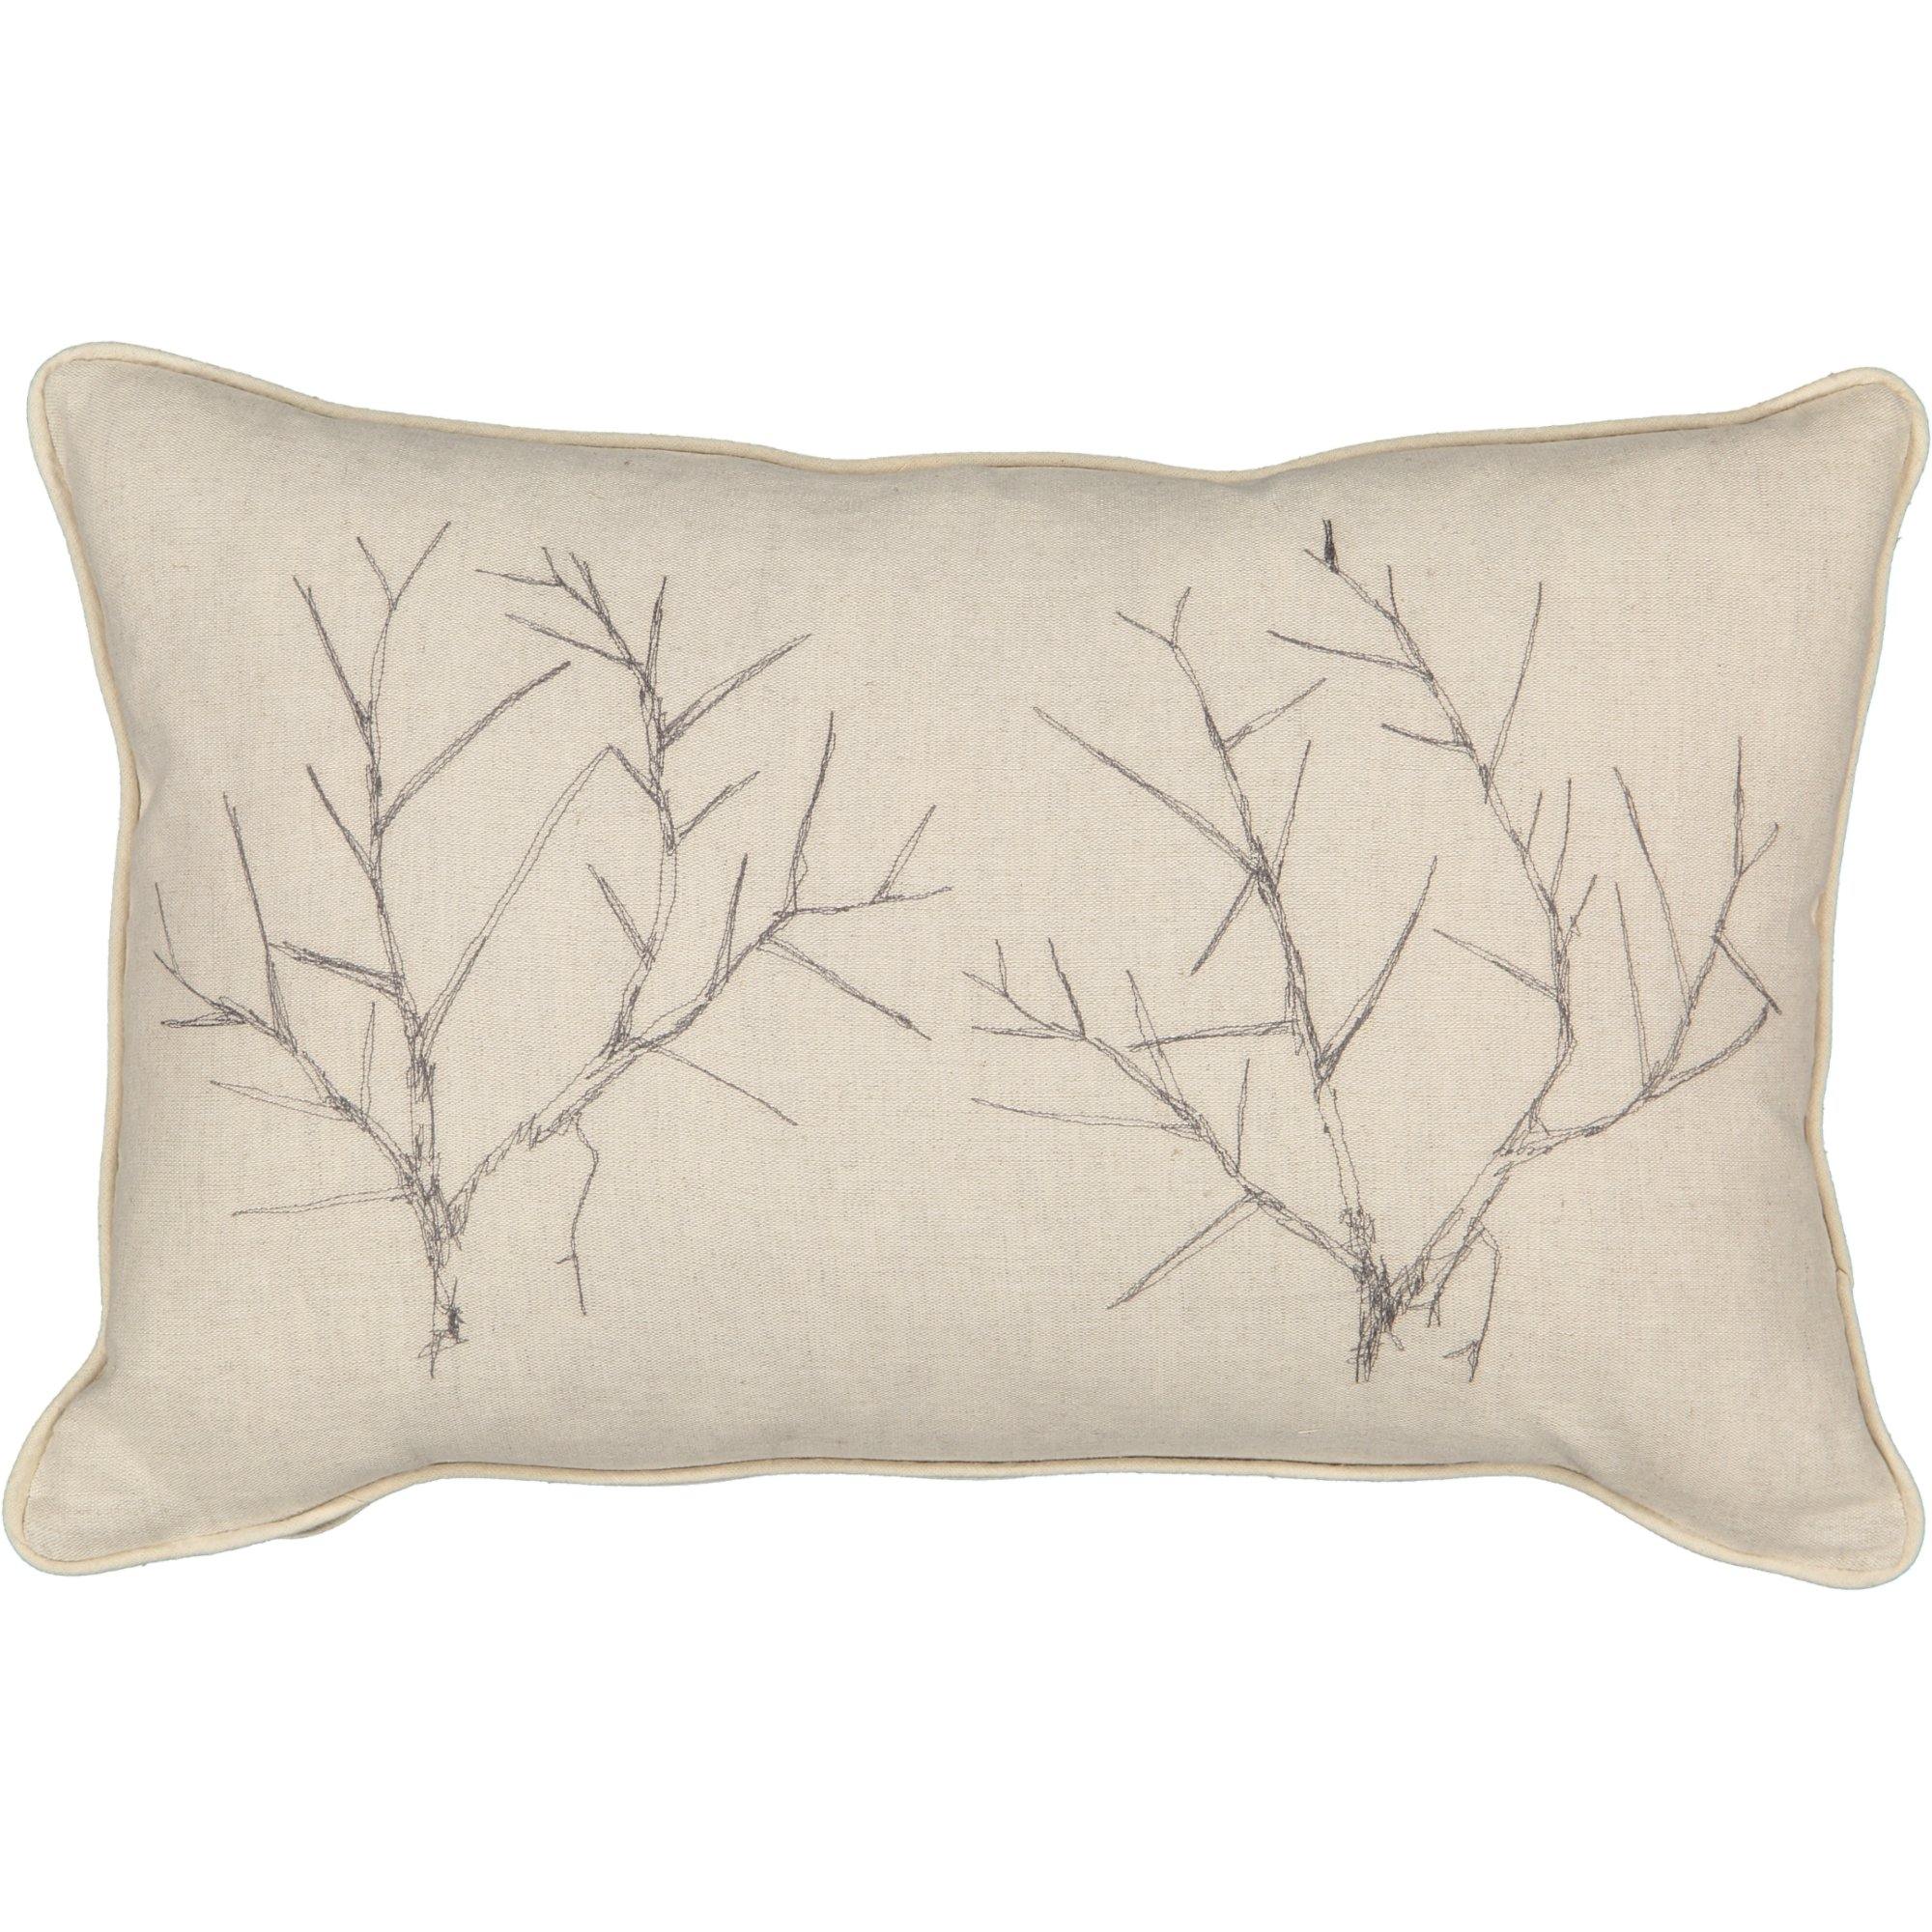 Thorns Cushion Cover - threads that bind us